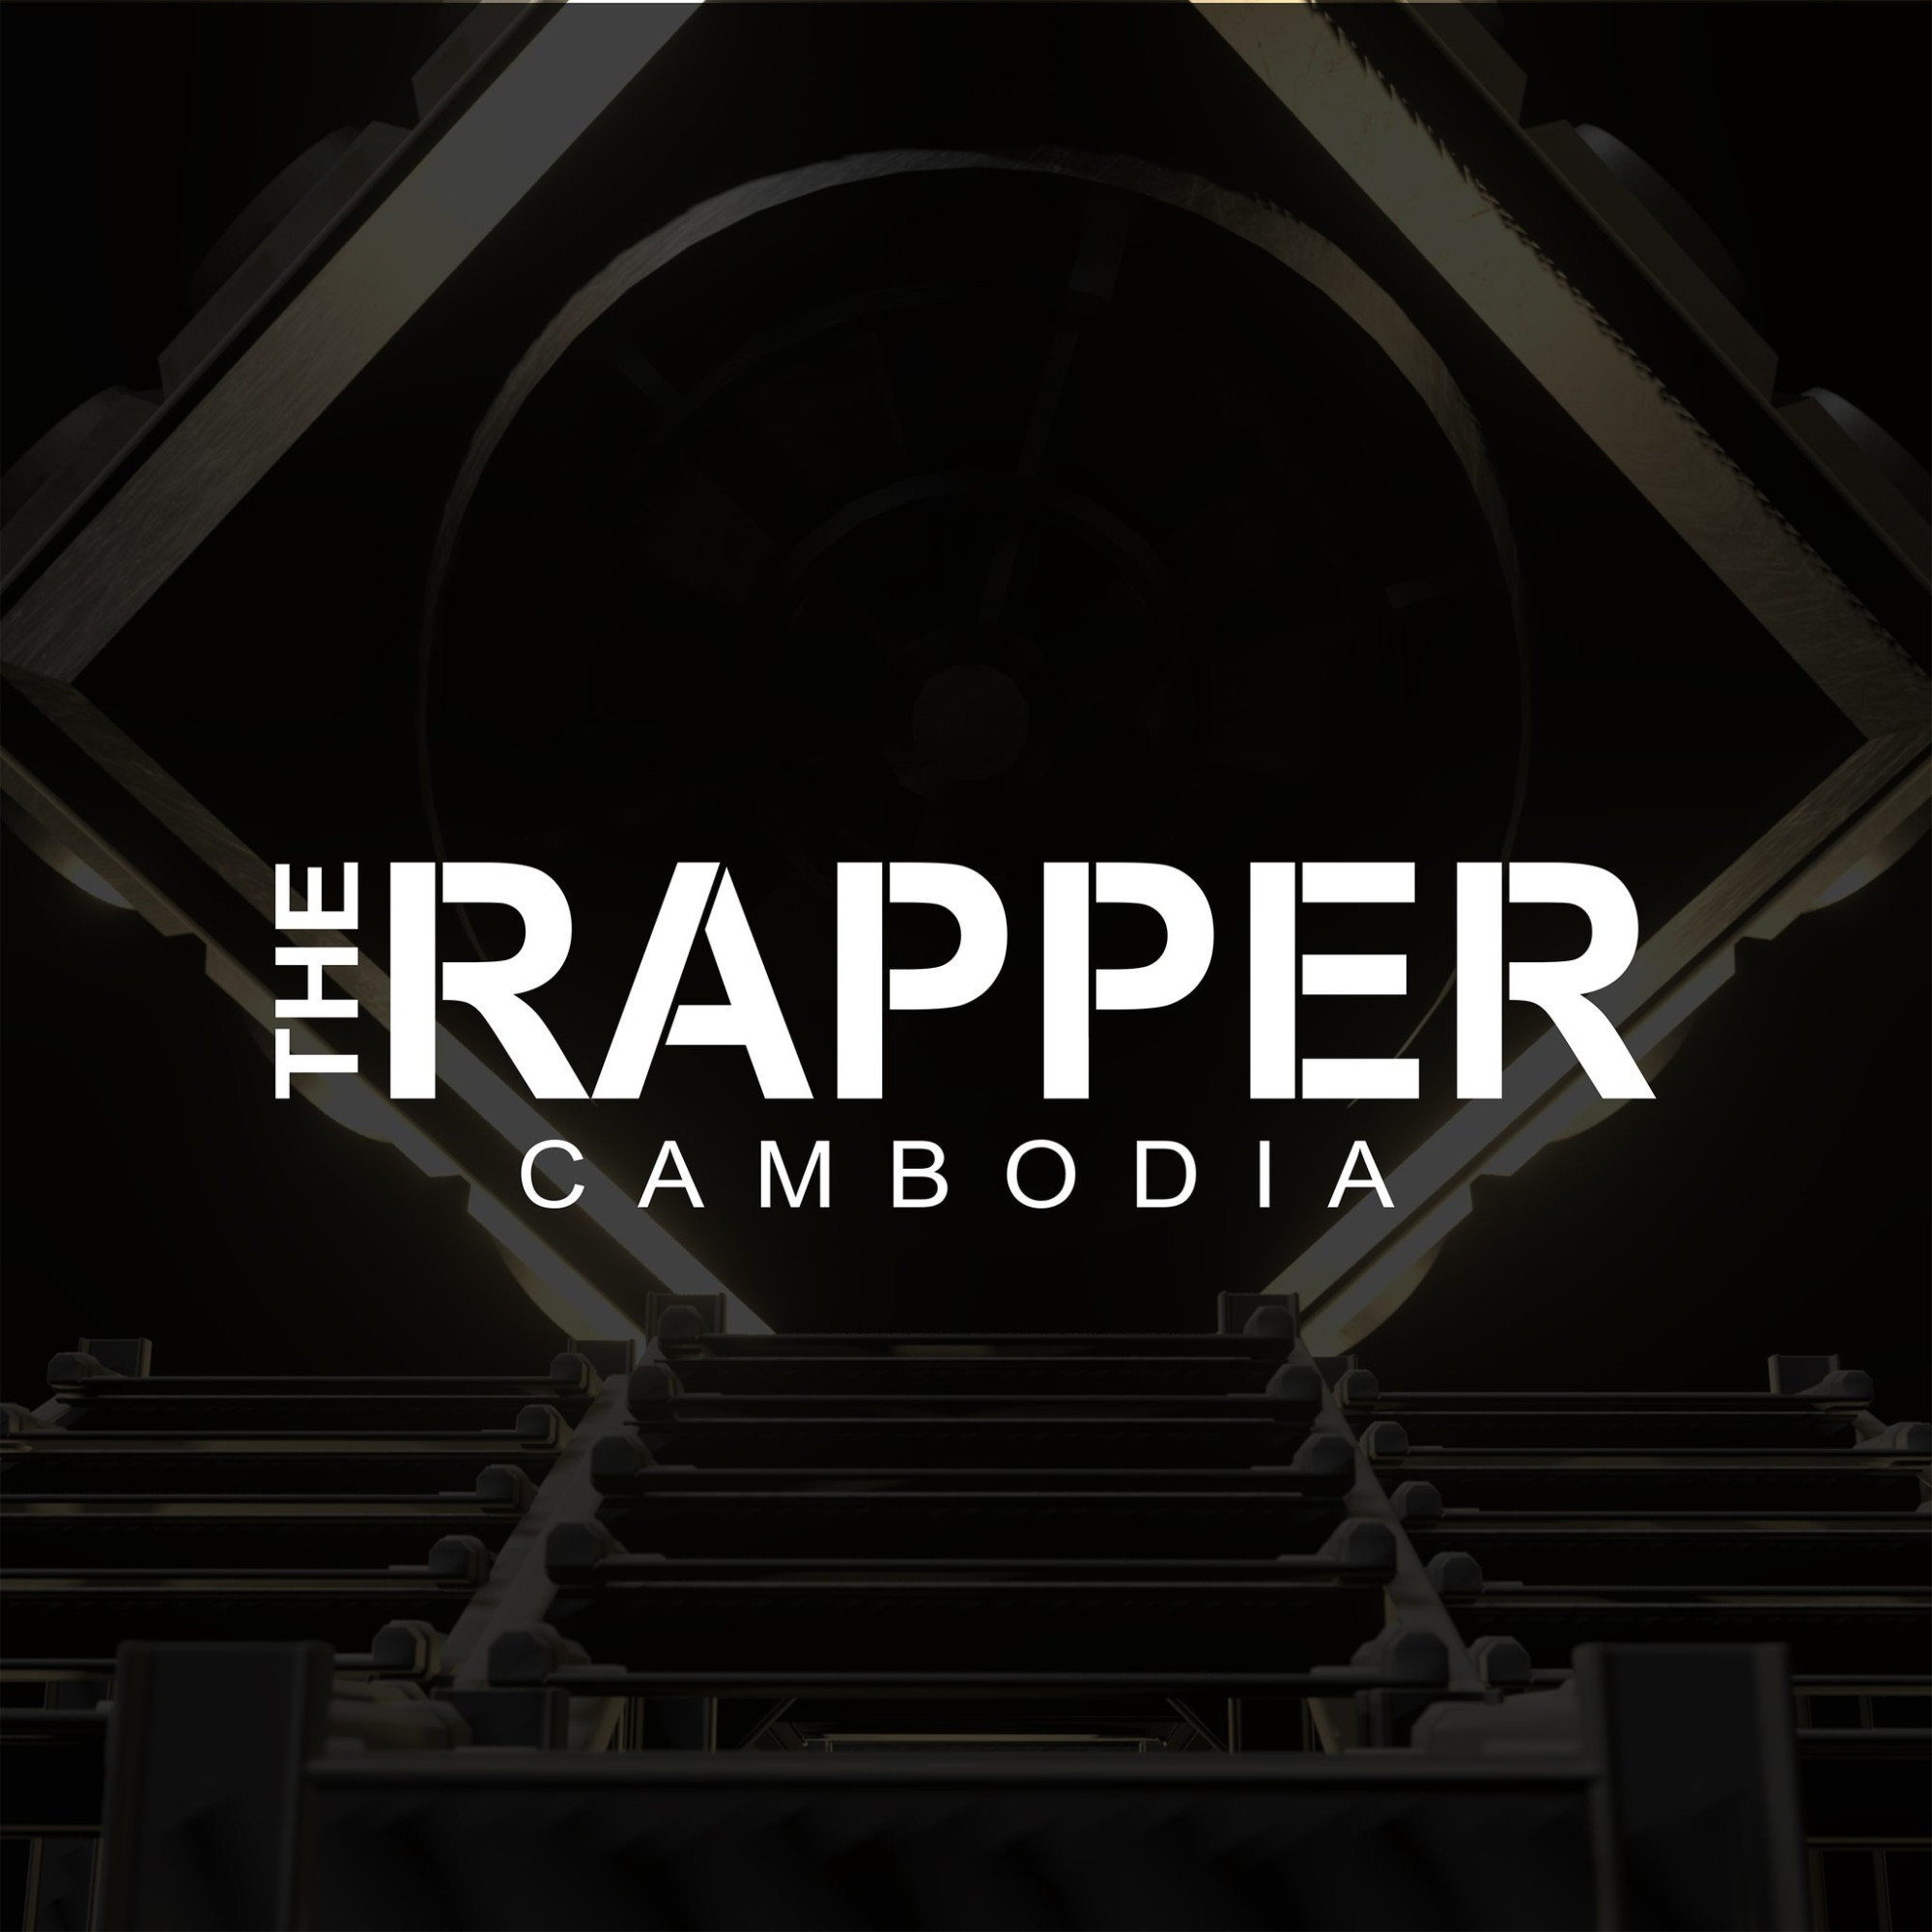 The Rapper Cambodia